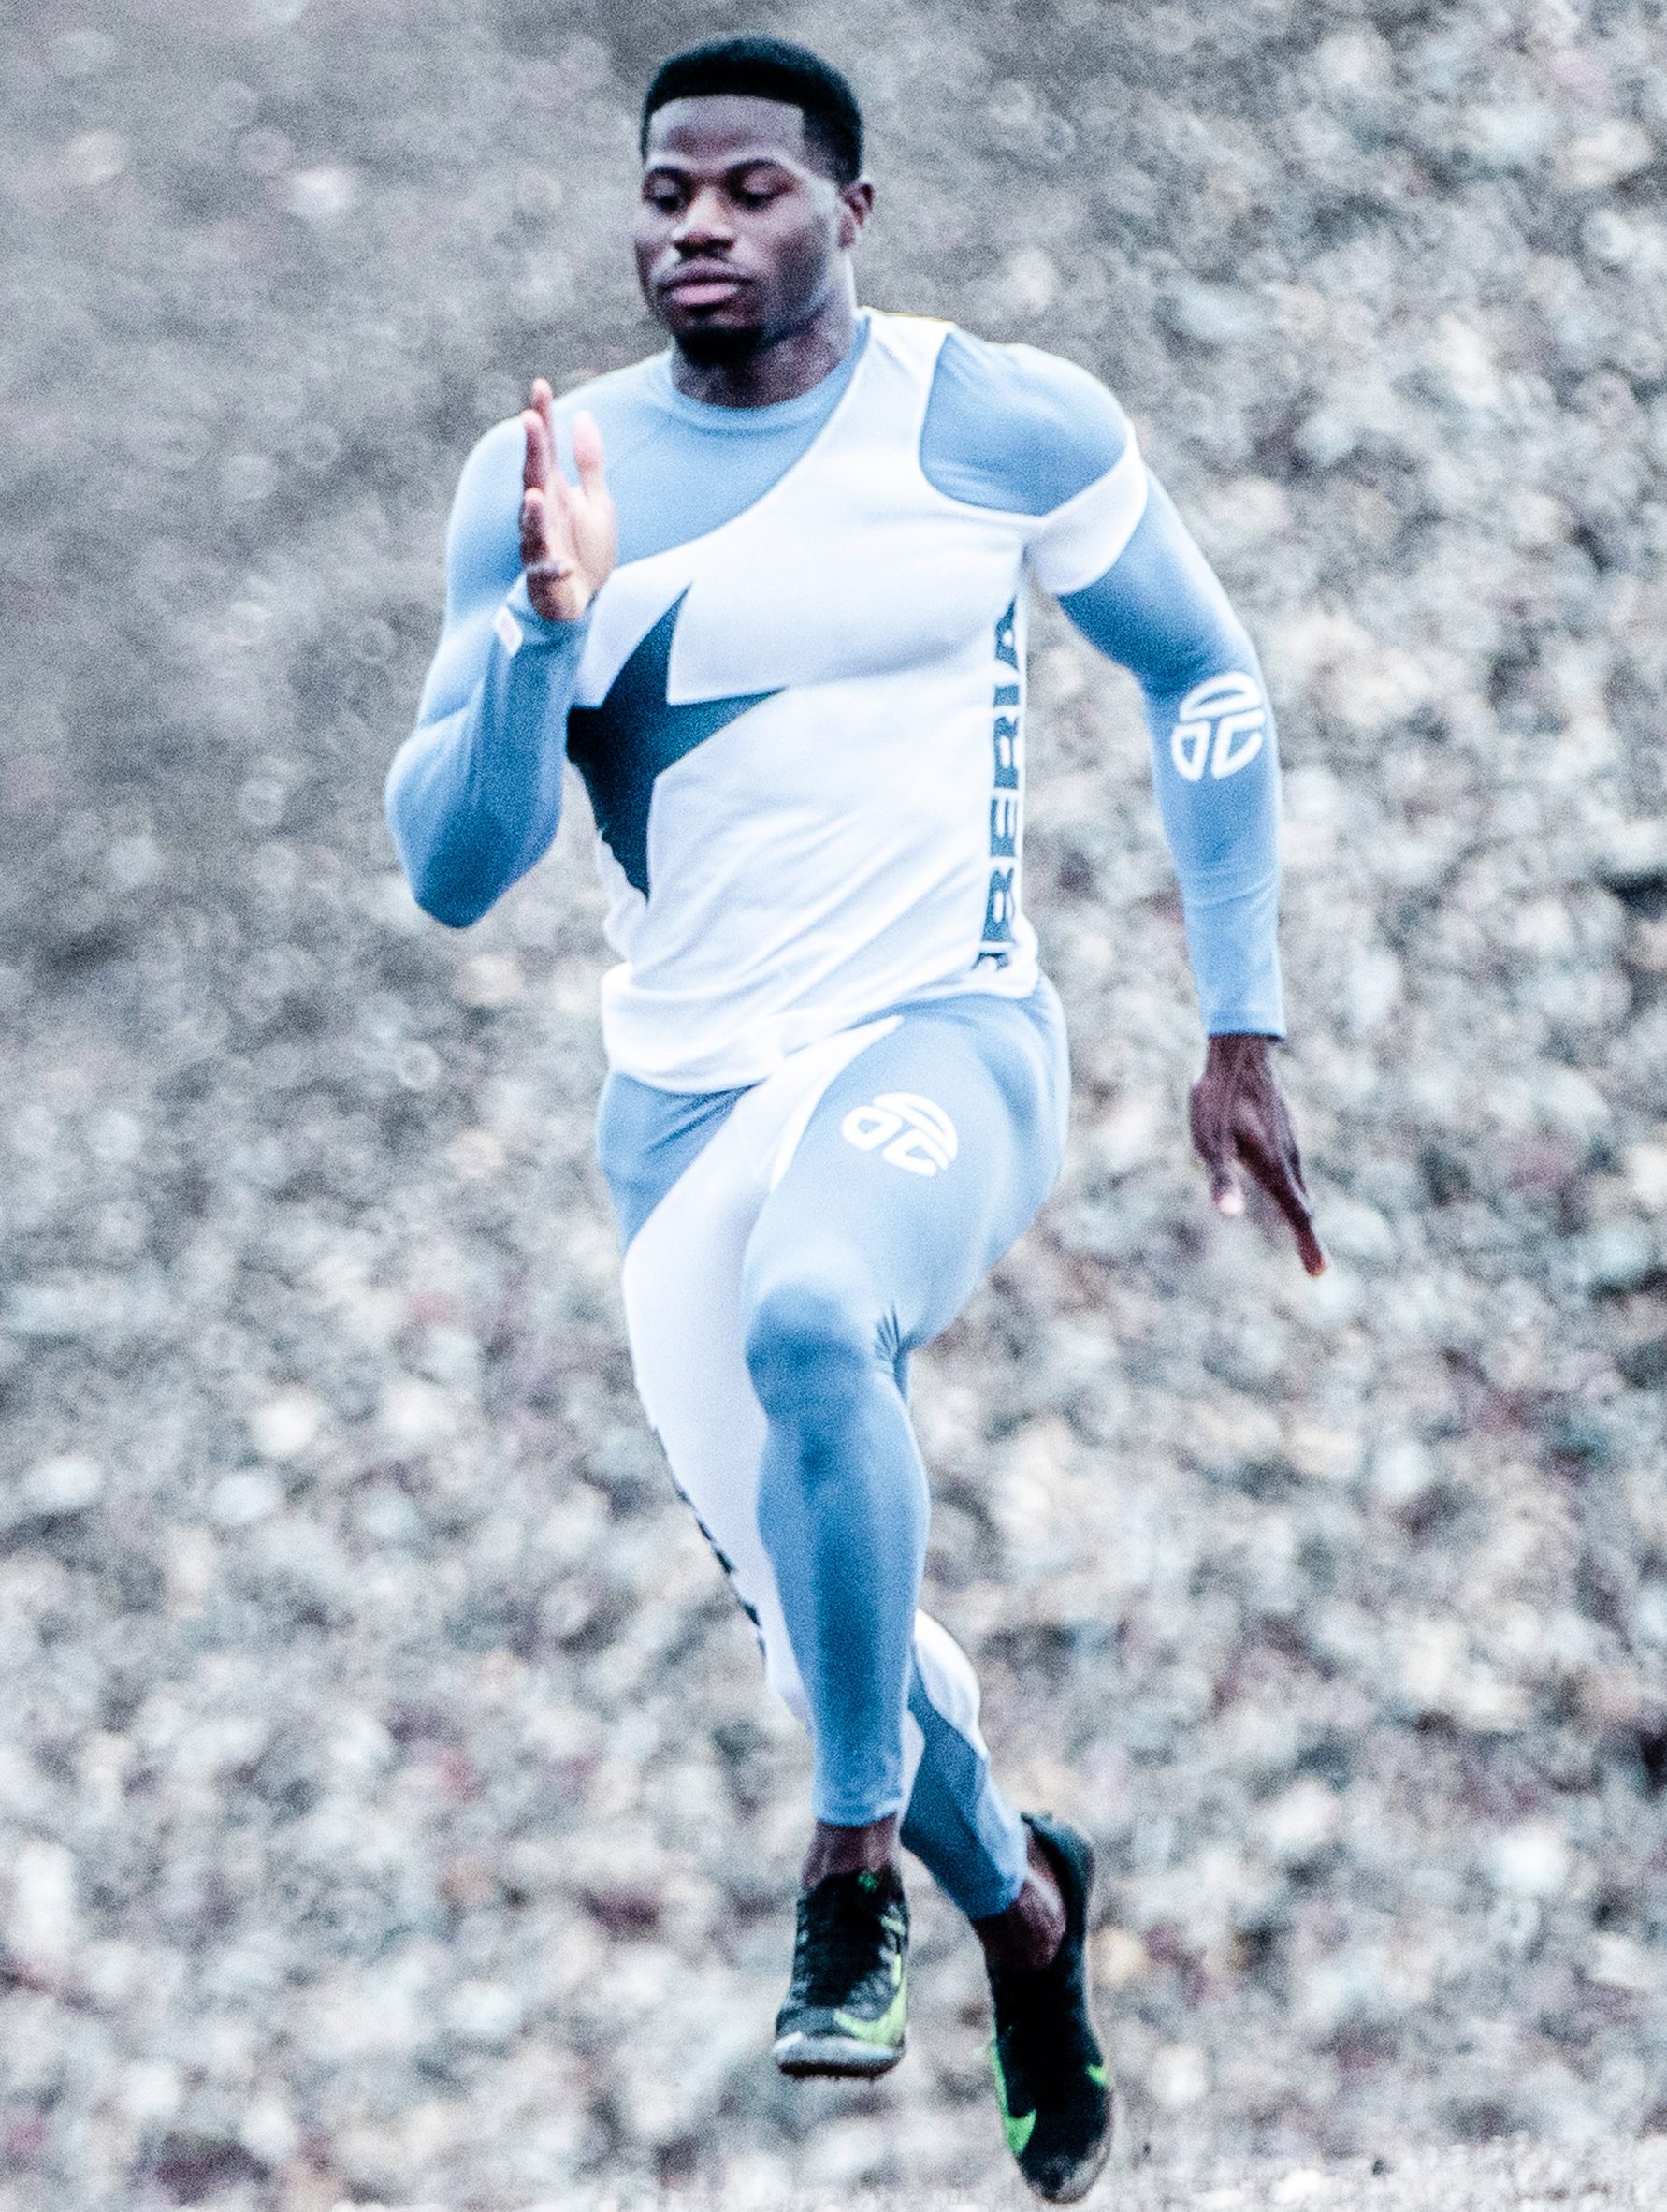 Liberian sprinter Emmanuel Matadi running in Telfar's uniform